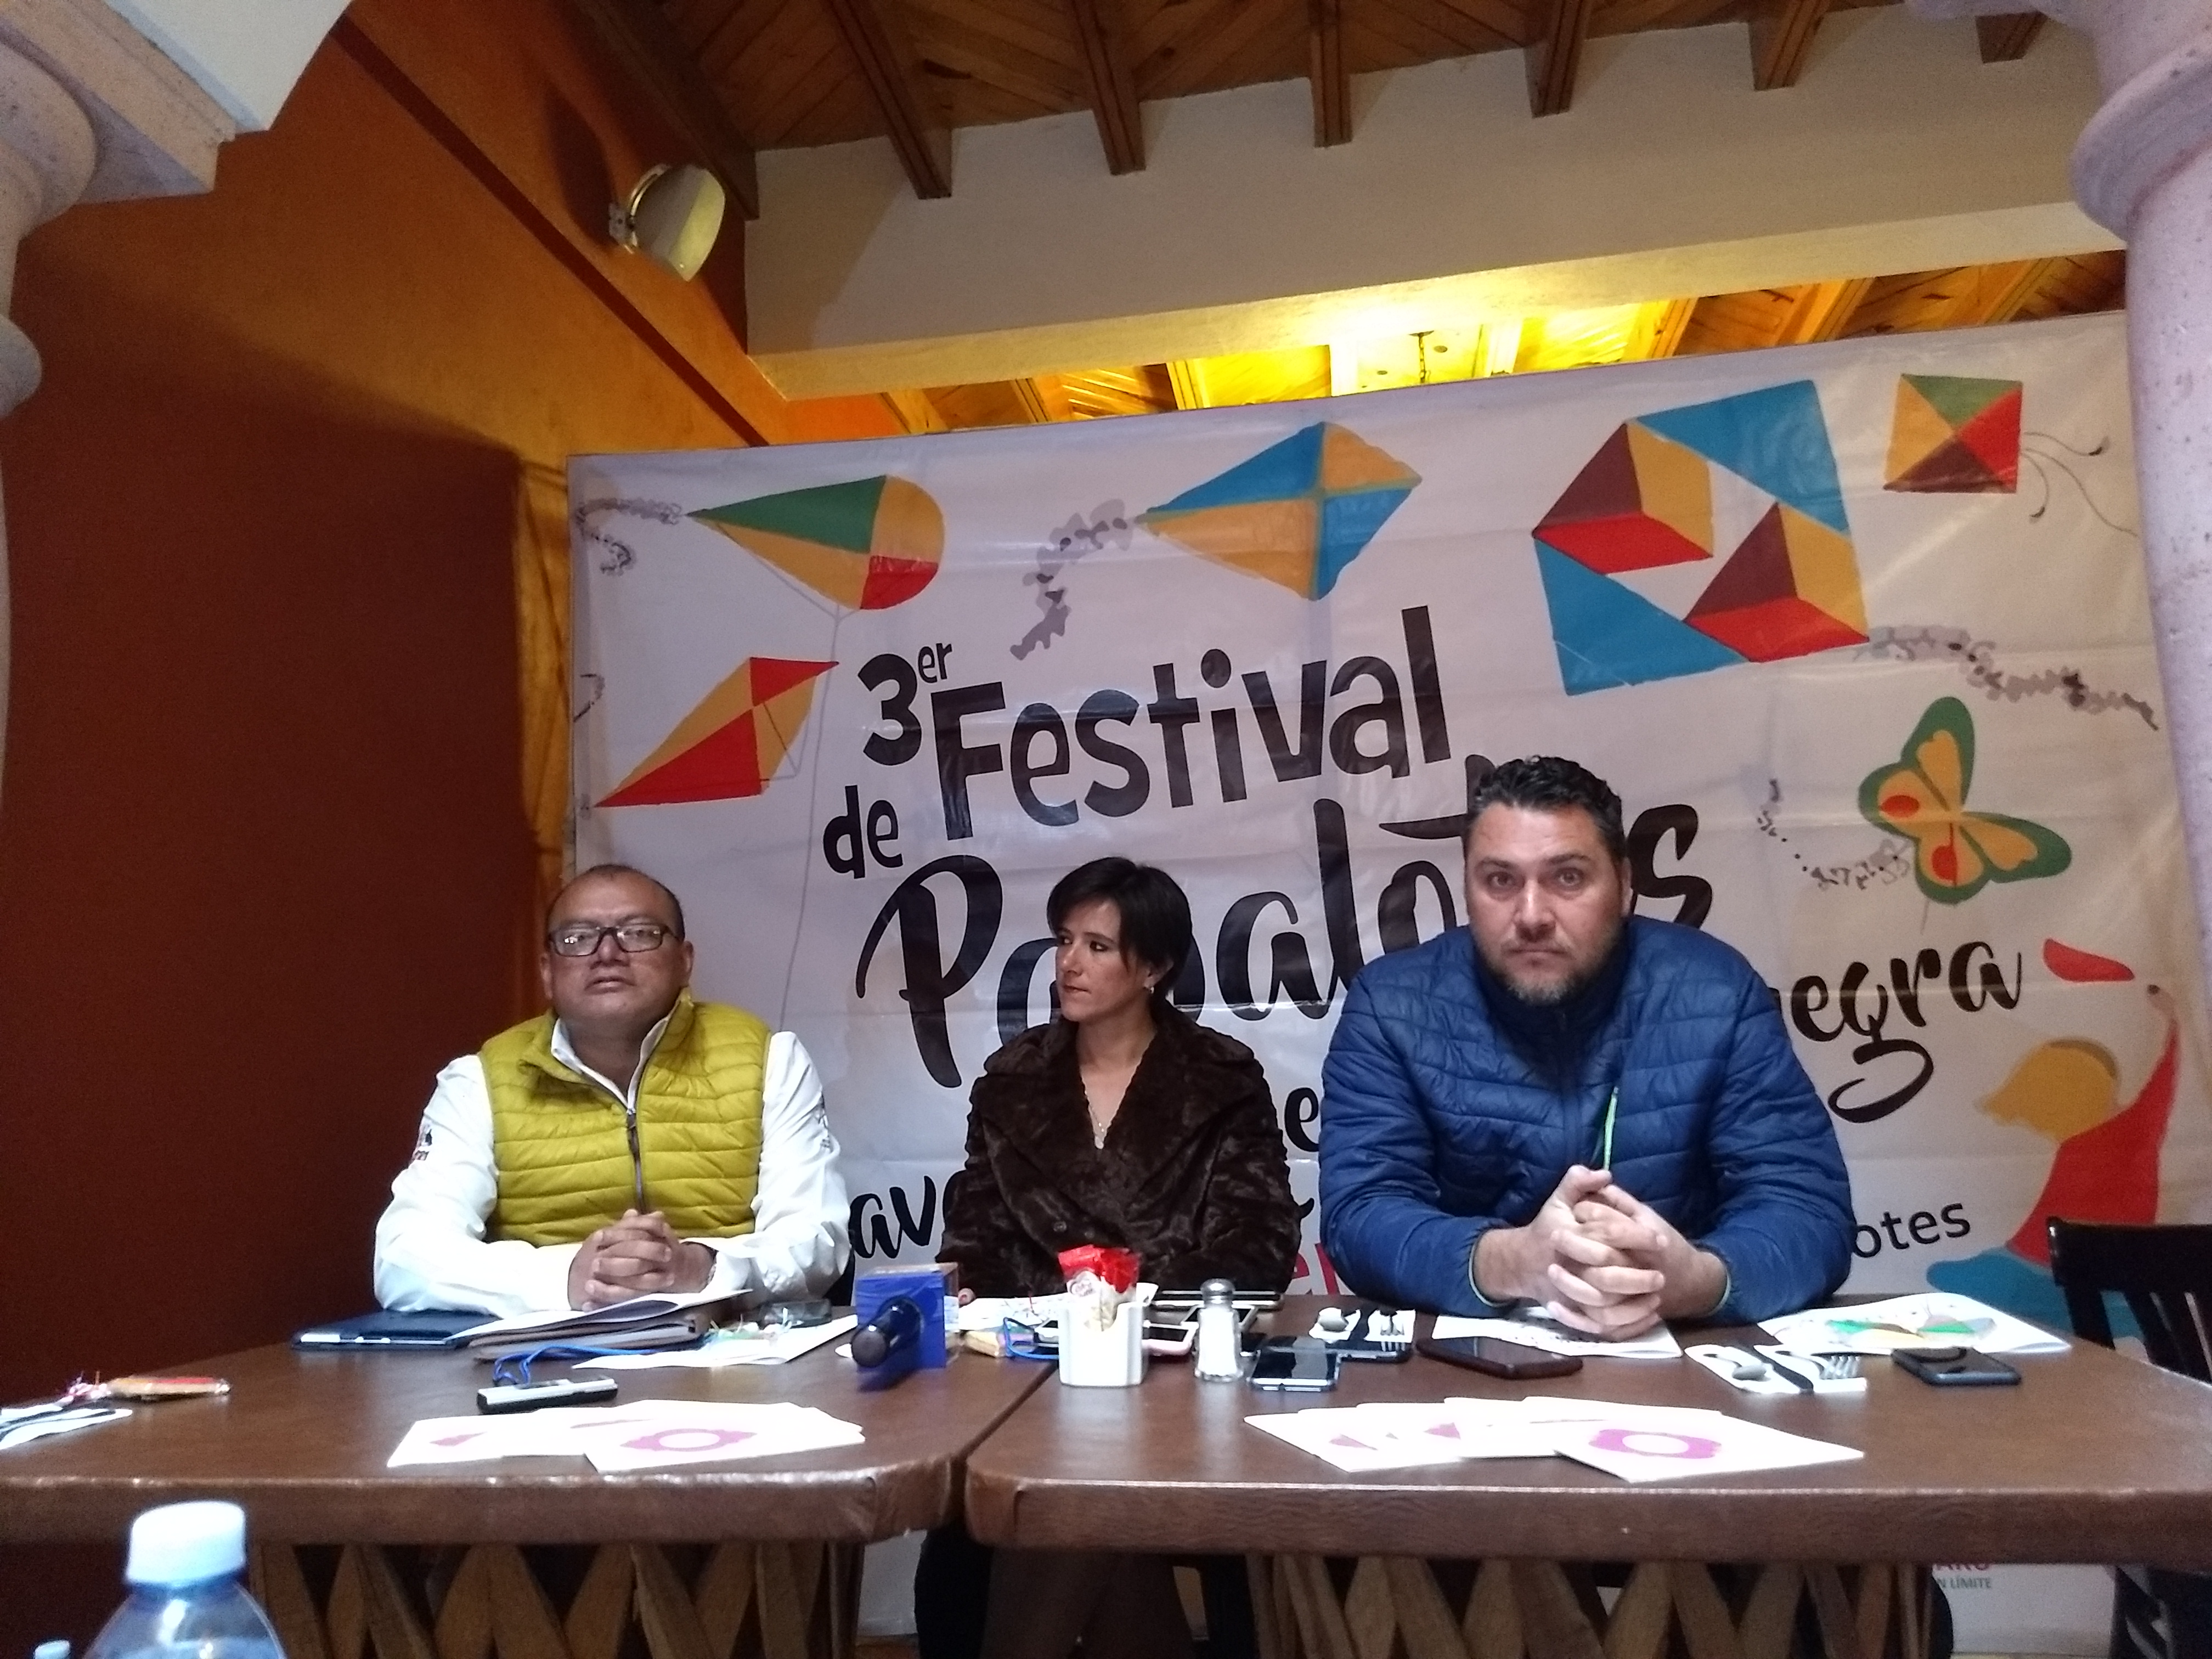  Secretaría de Turismo en Querétaro anuncia el Tercer Festival de Papalotes Tequisquiapan